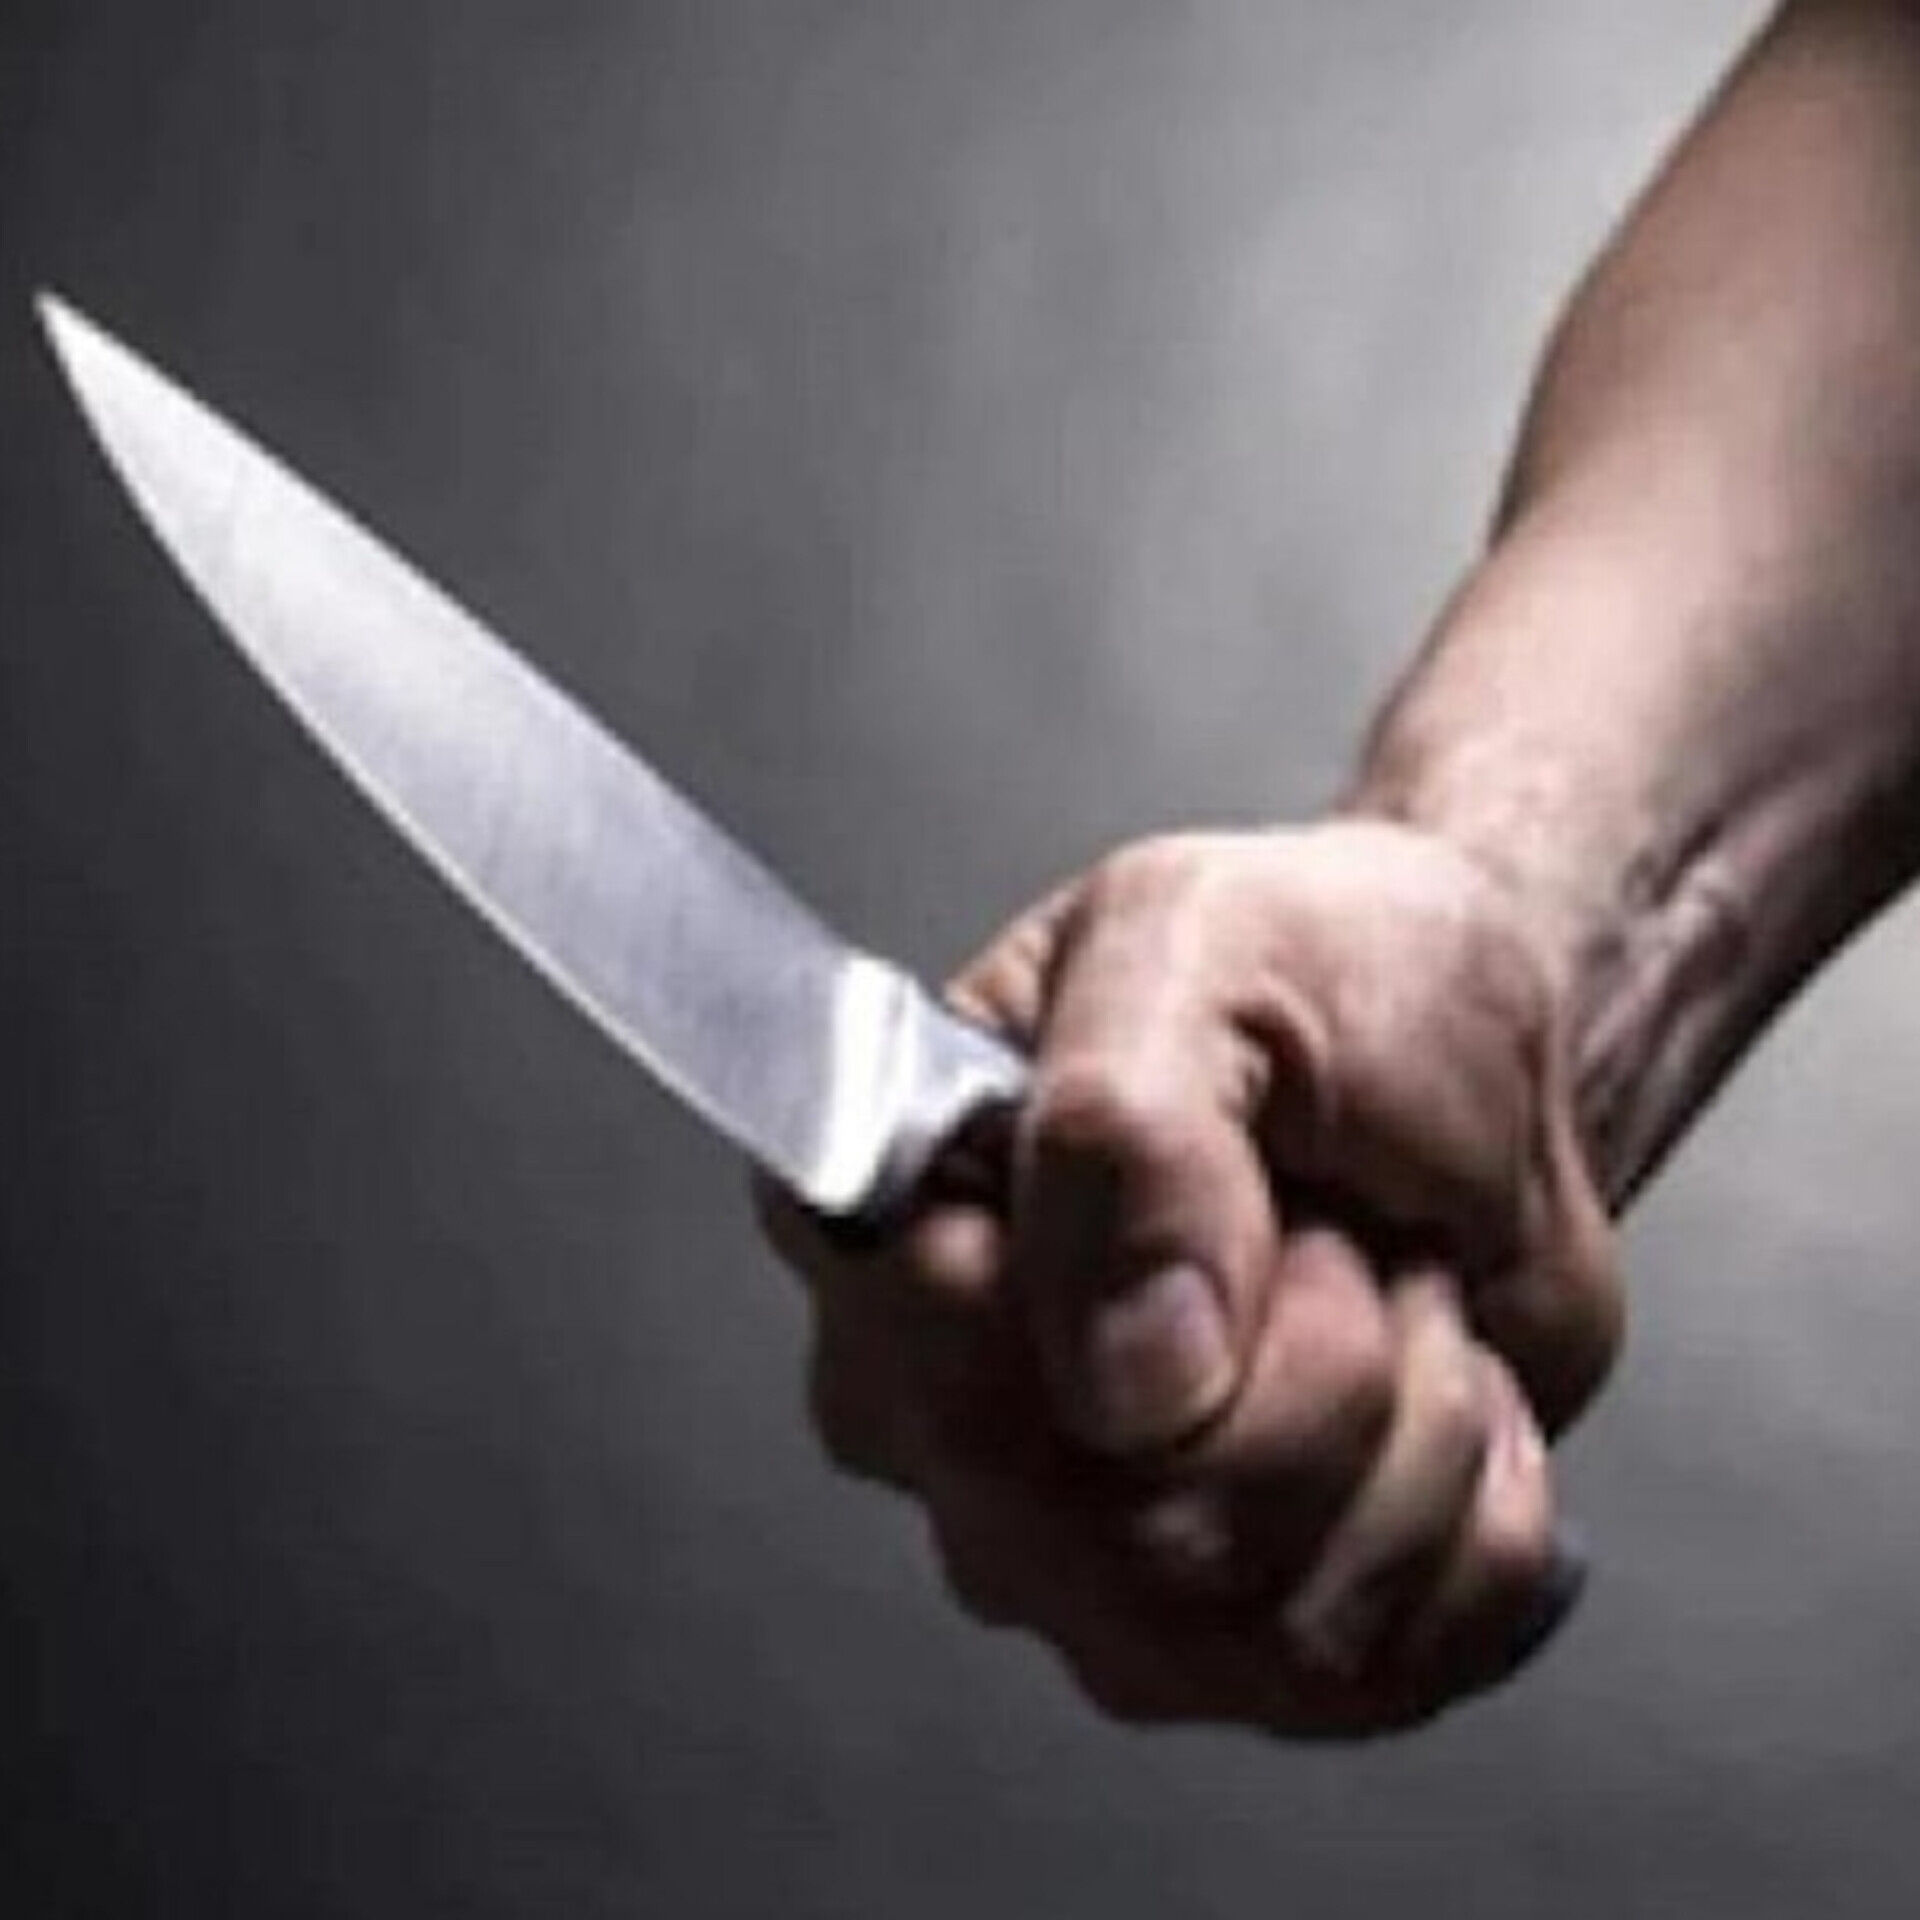 दिल्ली में सब्जी के मोल भाव को लेकर हुए विवाद में दुकानदार ने ग्राहक को चाकू मारकर किया घायल, फरार